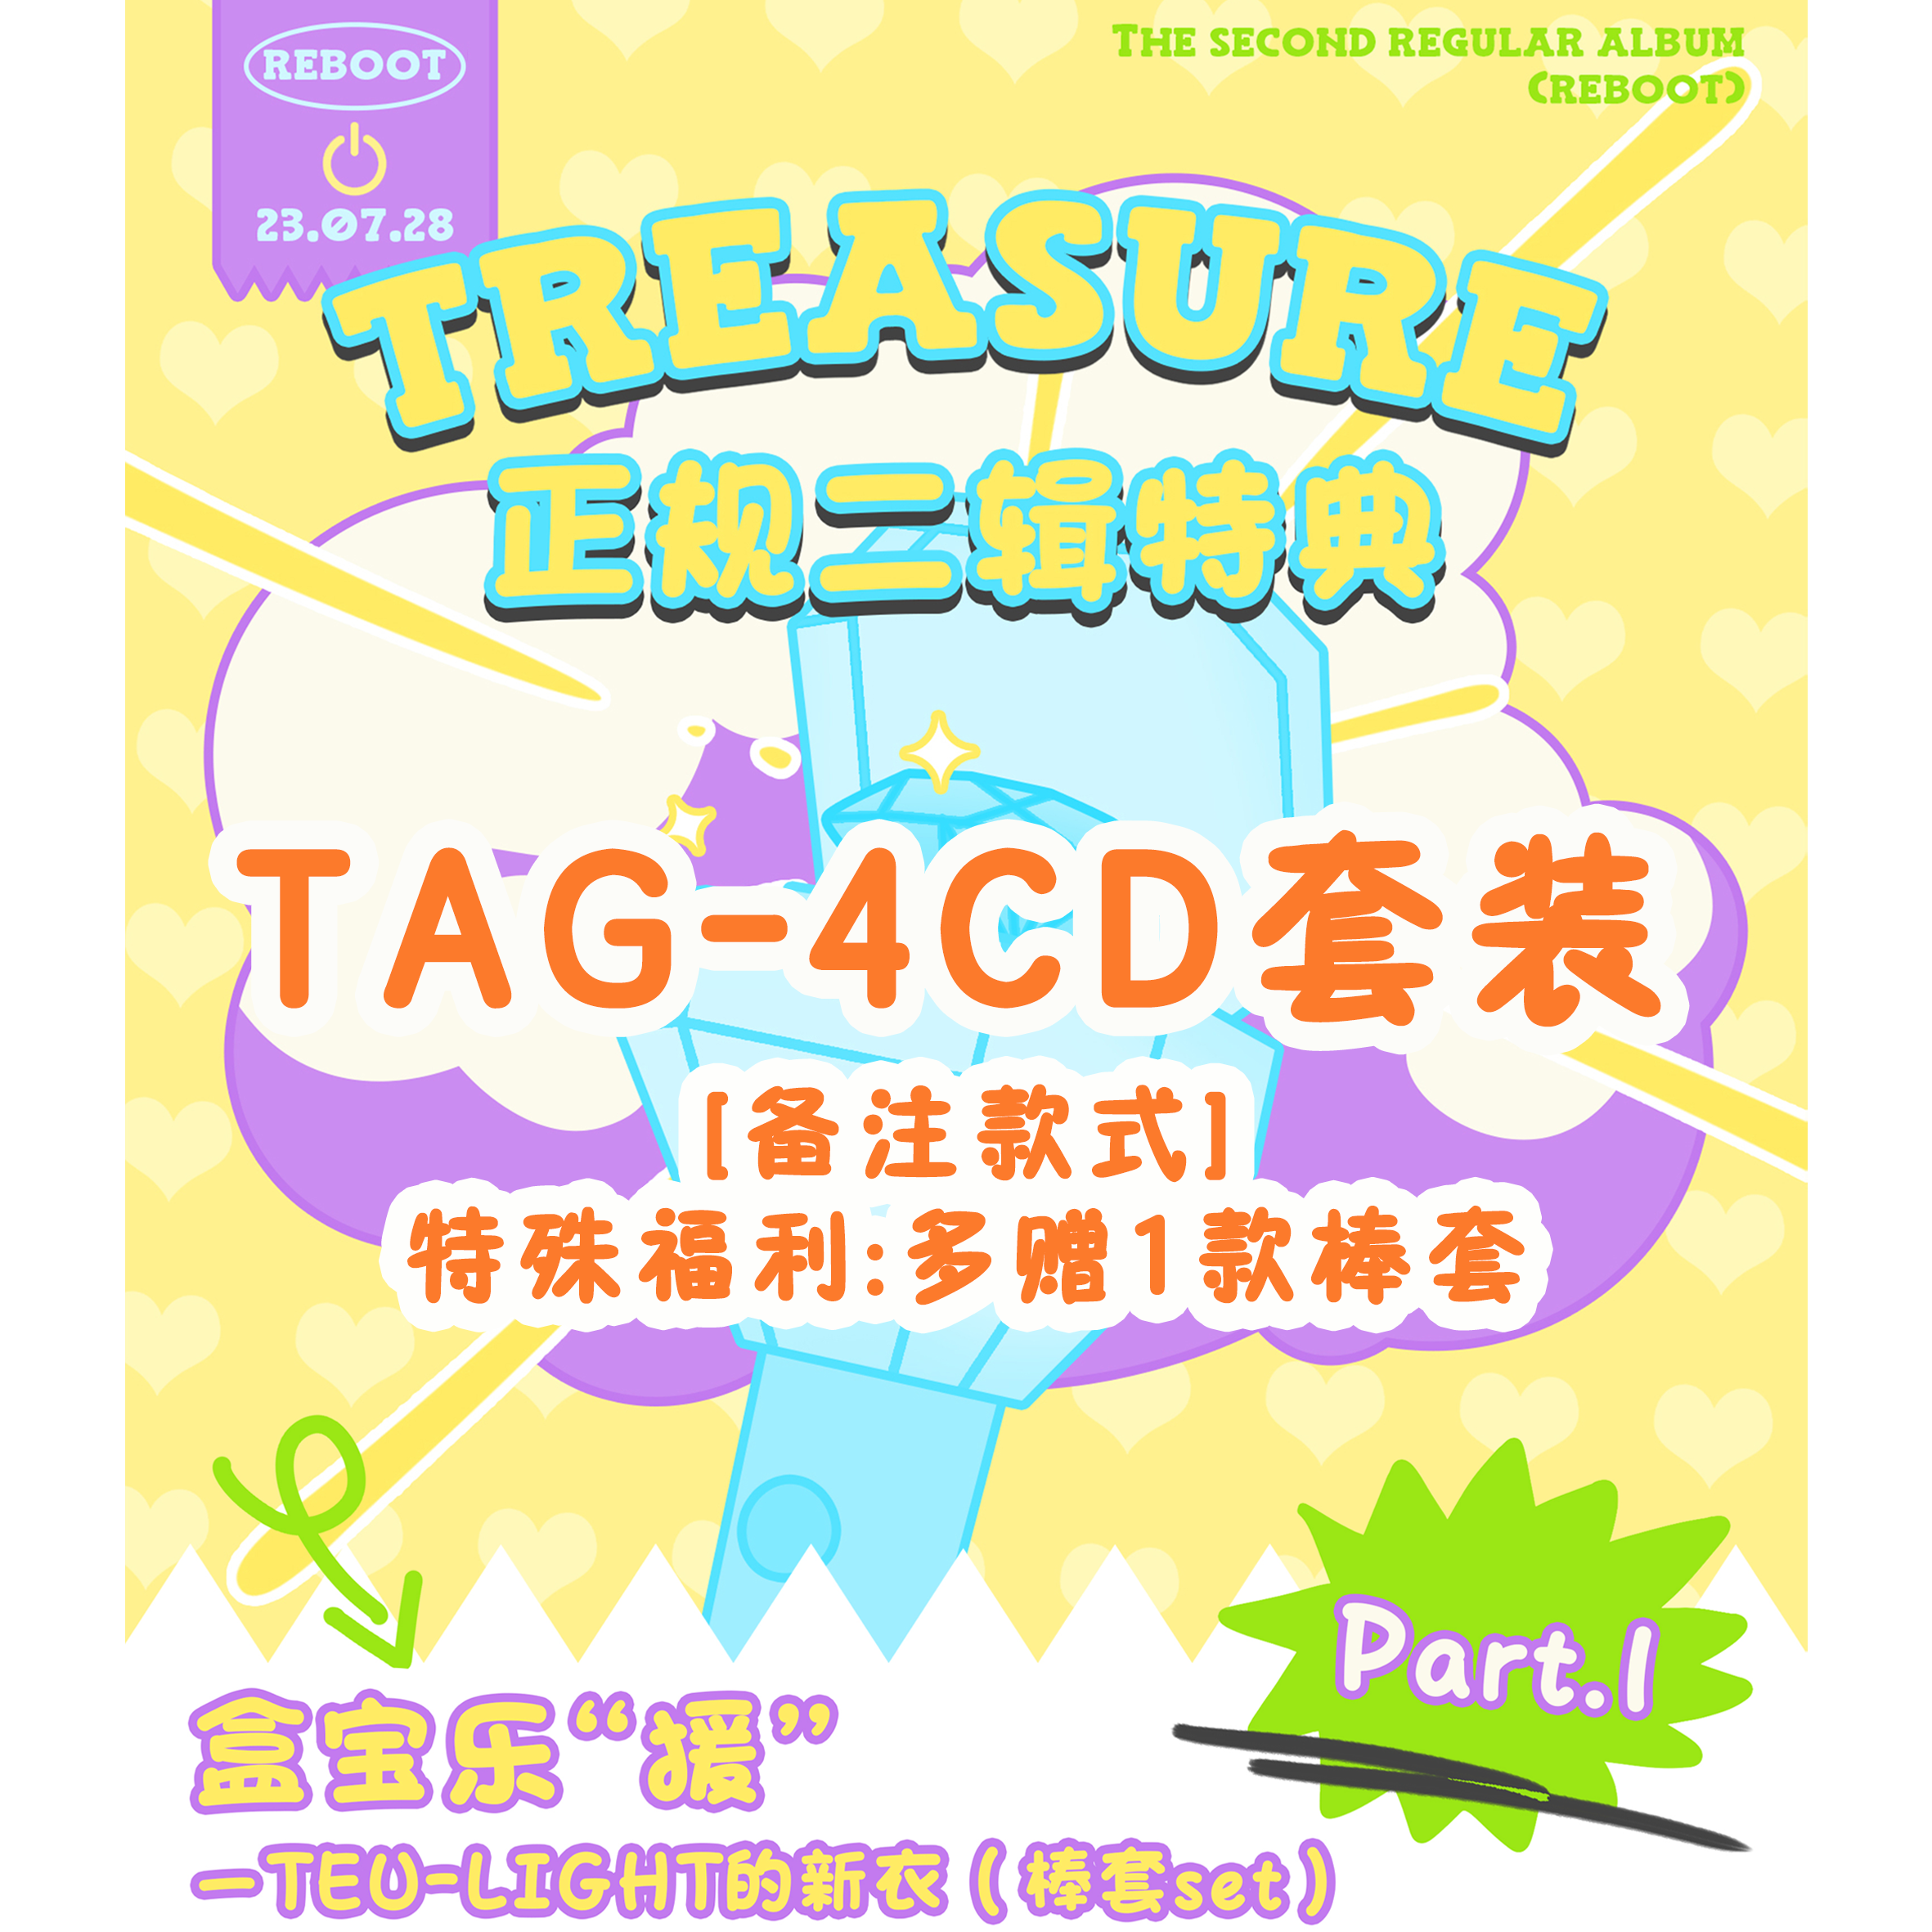 [全款 棒套 特典专] [Ktown4u Special Gift] [4CD 套装] TREASURE - 2ND FULL ALBUM [REBOOT] YG TAG ALBUM_TREASURE盒首